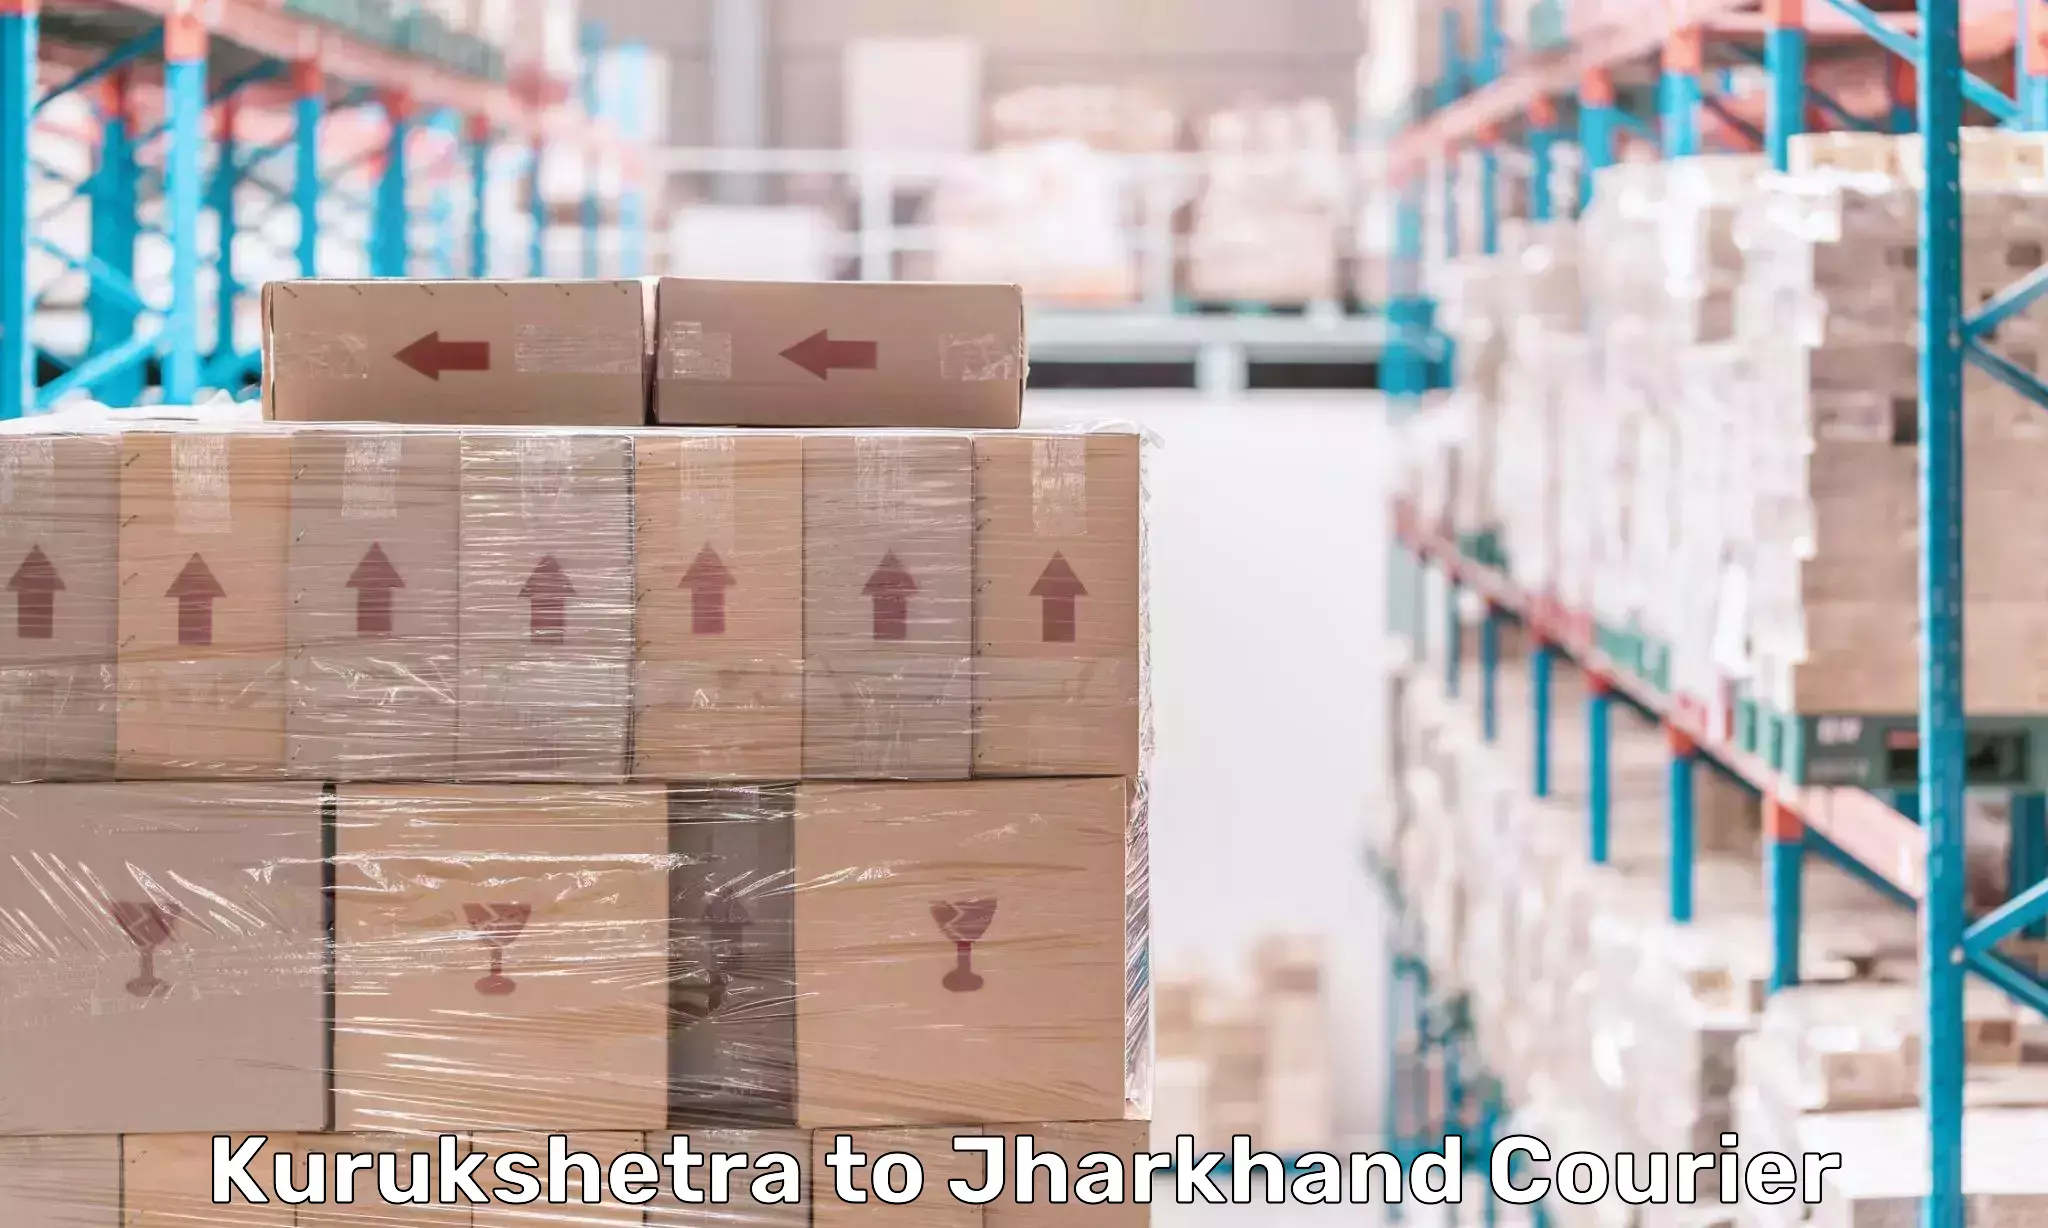 Reliable logistics providers in Kurukshetra to Jamshedpur